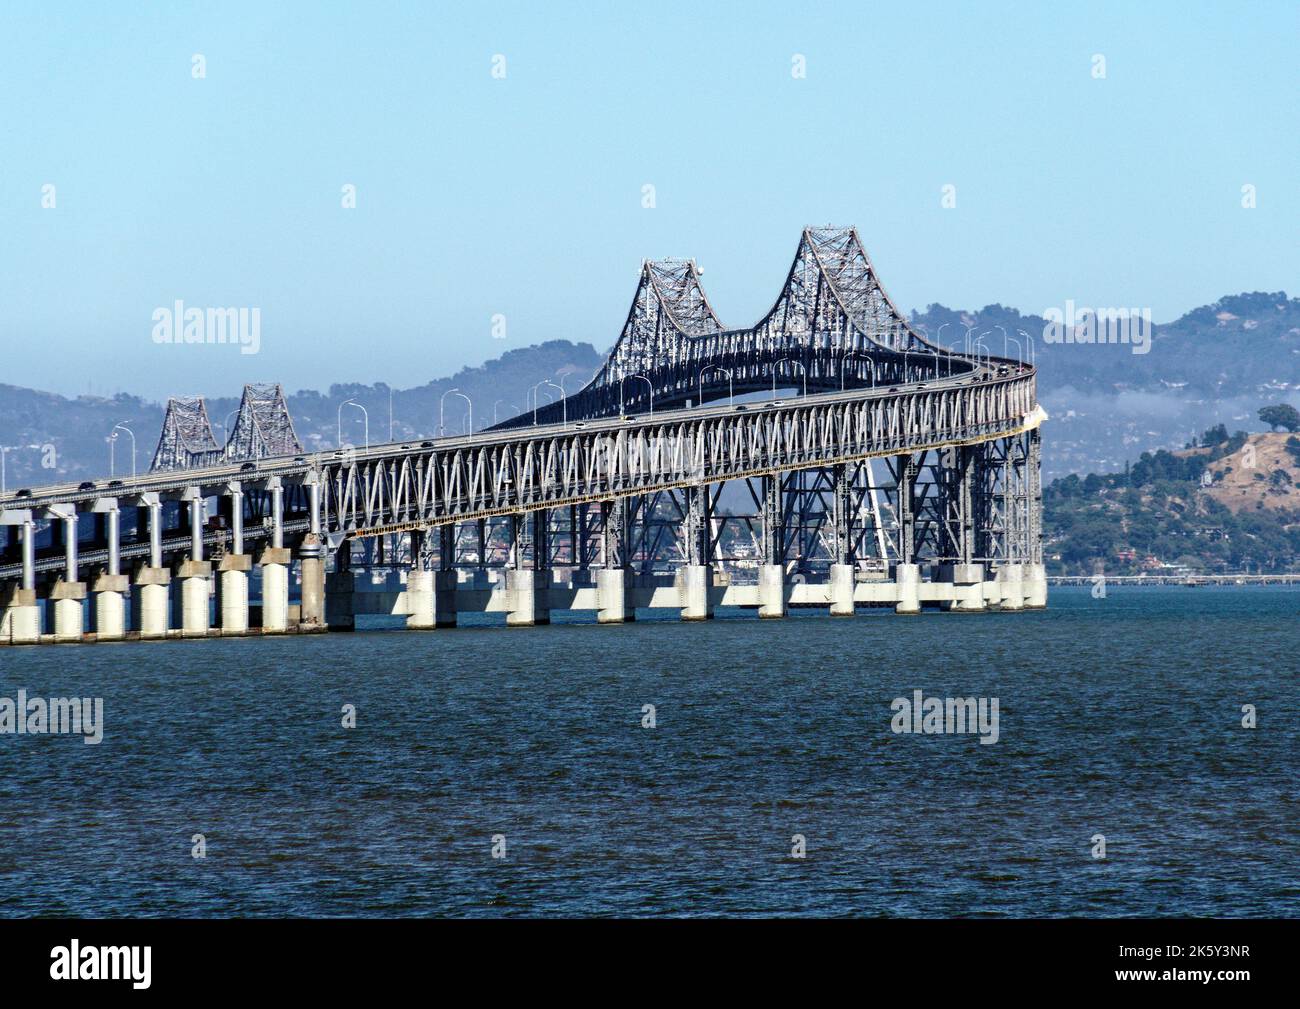 Il ponte Richmond-San Rafael e l'importante arteria che collega San Rafael e Richmond attraverso l'area di North Bay della Baia di San Francisco. Foto Stock